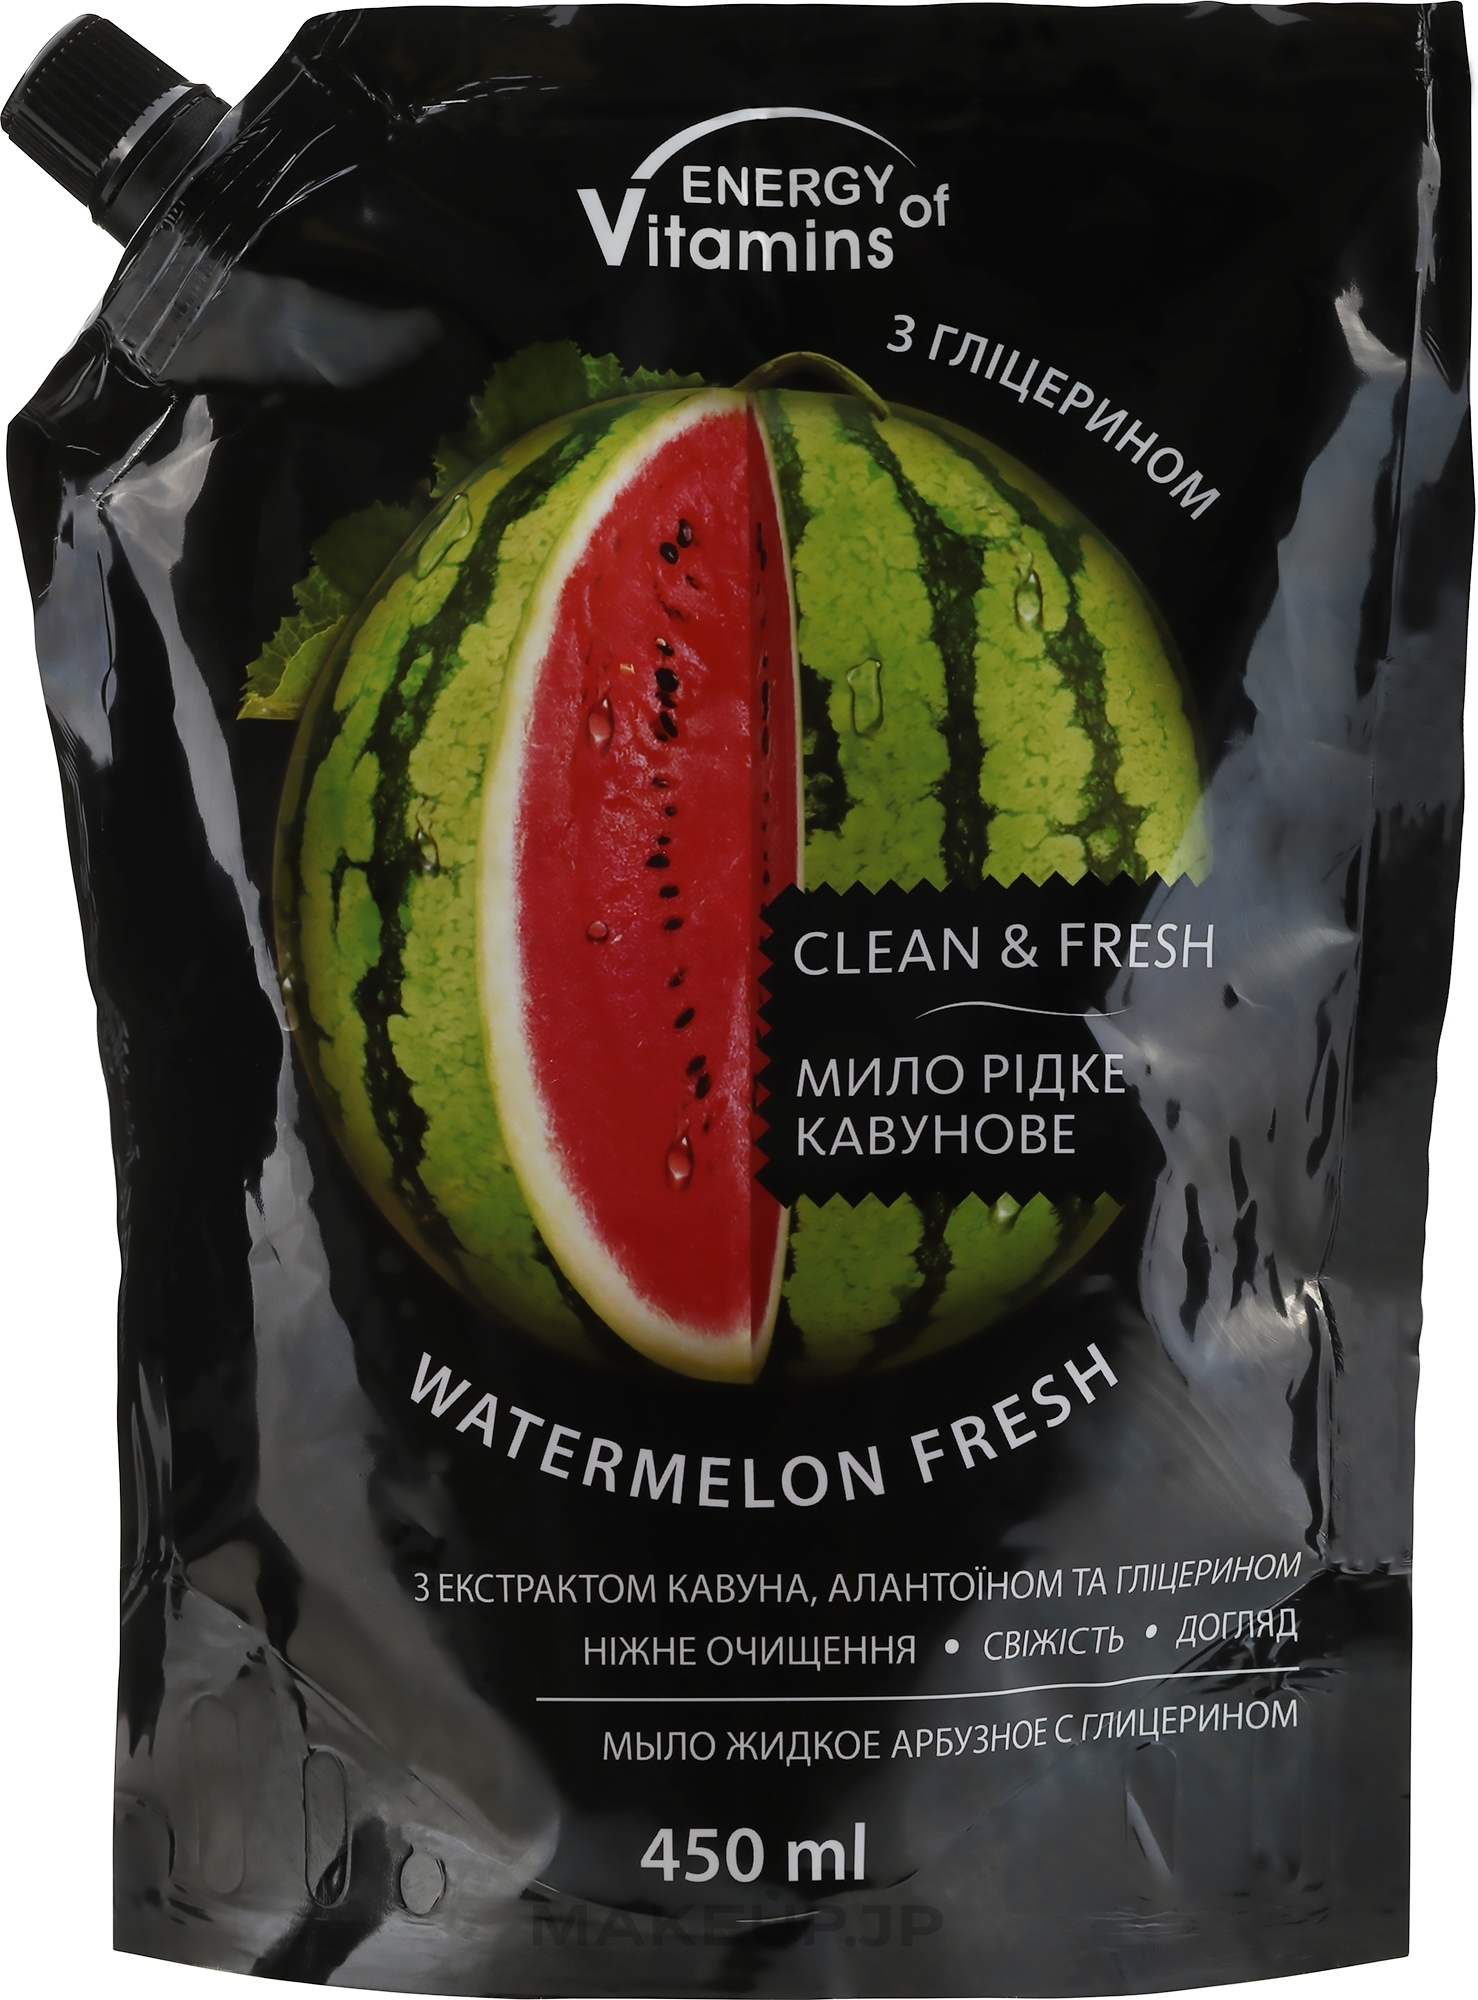 Watermelon Glycerin Liquid Soap - Vkusnyye Sekrety Energy of Vitamins (doypack) — photo 450 ml